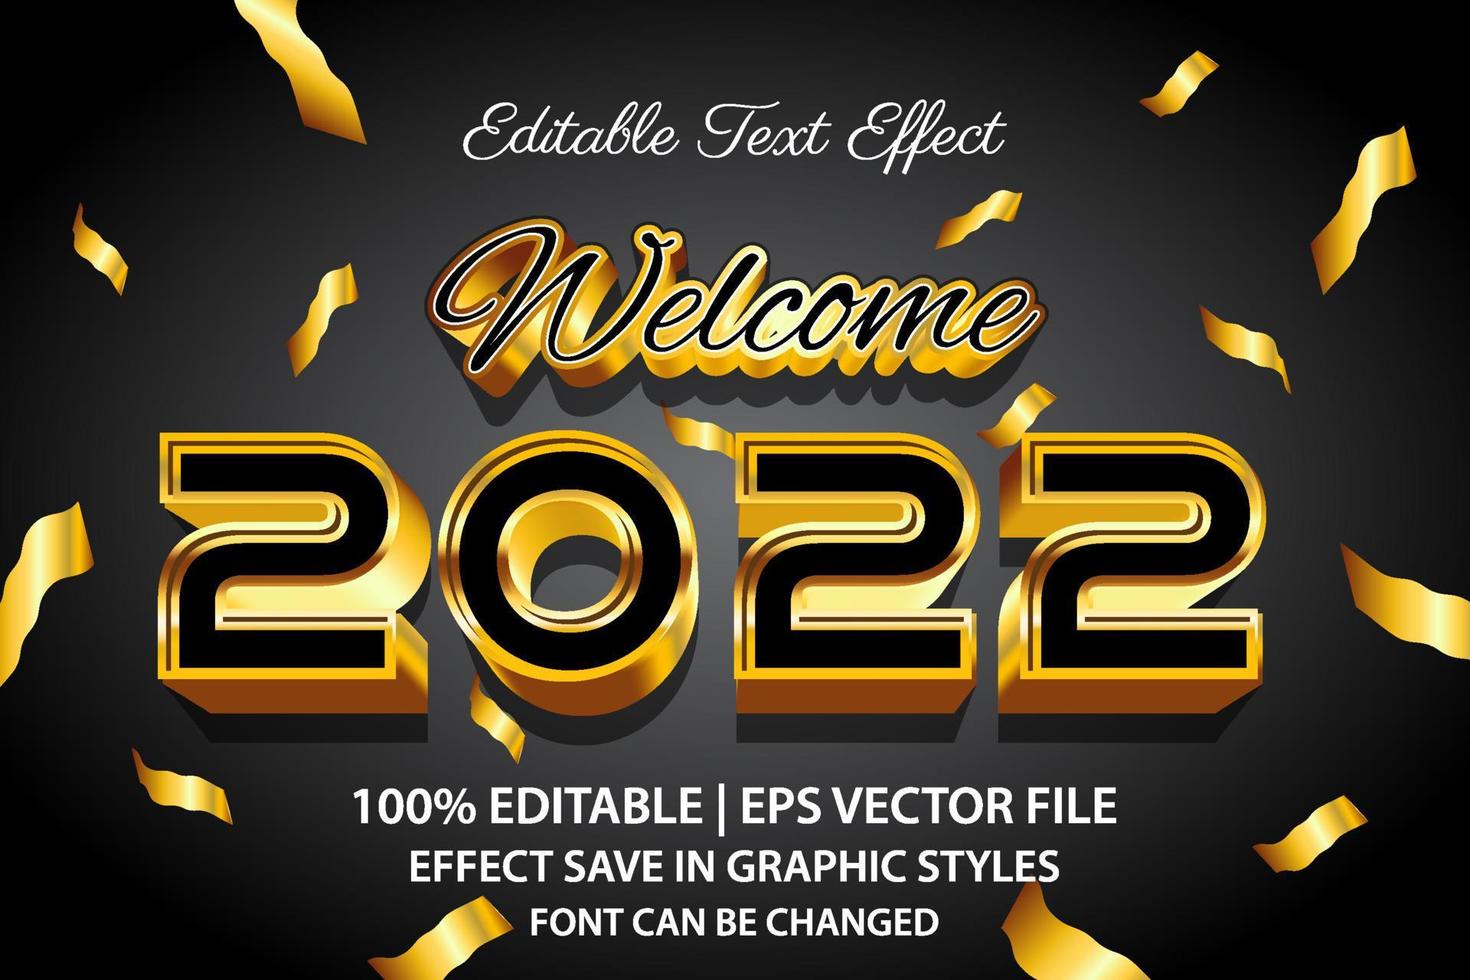 gelukkig nieuwjaar 2022 bewerkbare teksteffect 3D-stijl vector